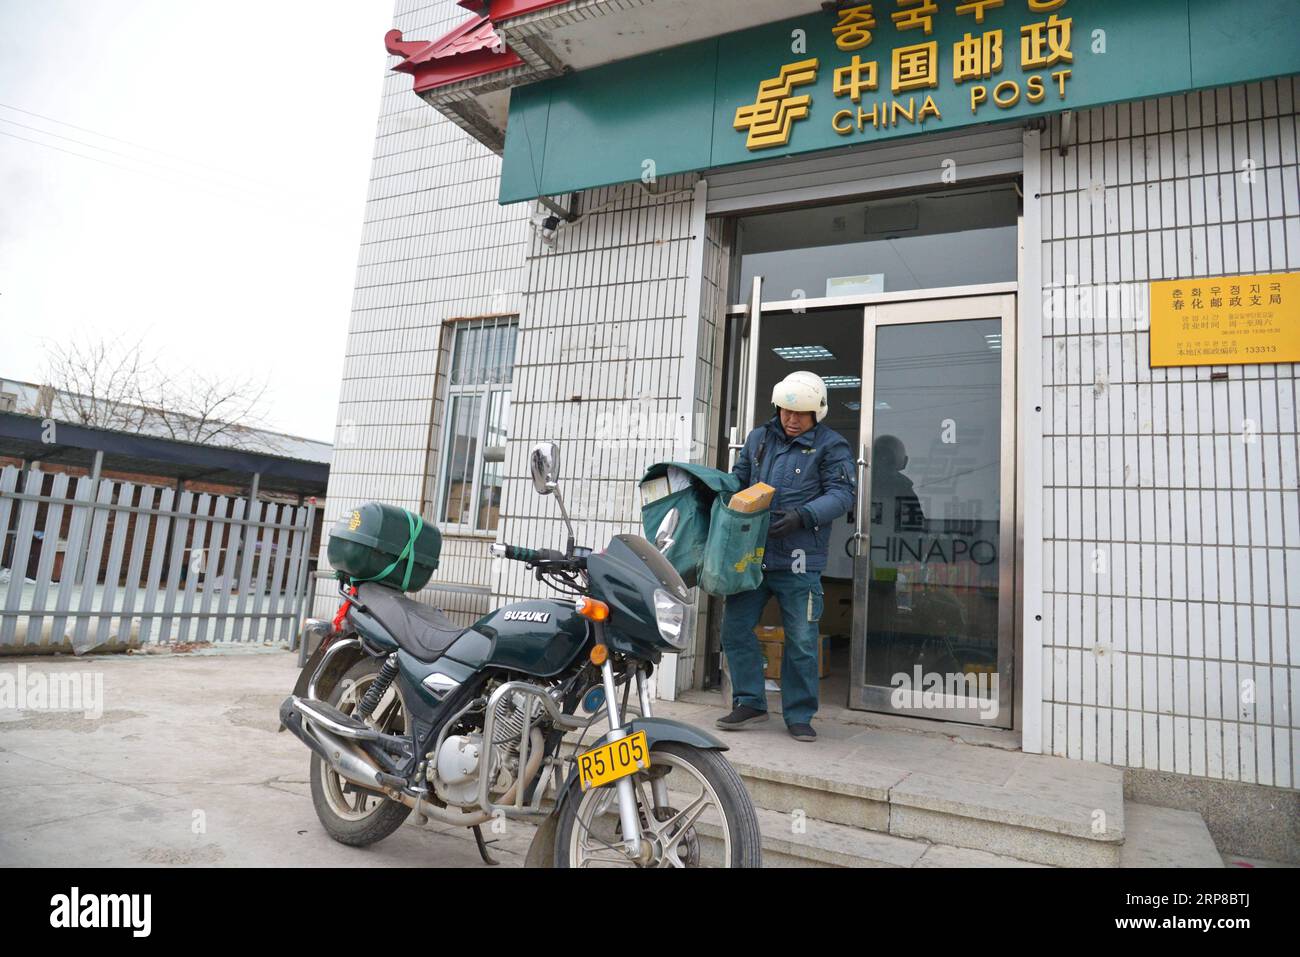 (190226) -- CHANGCHUN, 26 febbraio 2019 (Xinhua) -- il postino Jin Renzhe trasporta pacchi postali da caricare sulla sua moto presso la filiale di China Post a Chunhua Township della città di Huichun, nella provincia di Jilin della Cina nordorientale, 19 febbraio 2019. Jin Renzhe lavora come postino da 30 anni nella Chunhua Township, dove il servizio postale è inadeguato a causa dei ripidi sentieri di montagna e dei villaggi sparsi in modo inadeguato. Nonostante ciò, Jin riesce a consegnare le e-mail agli abitanti del villaggio lo stesso giorno in cui le e-mail arrivano in città. Mentre molti giovani lavorano fuori città, Jin fa da ponte a loro e ai loro genitori Foto Stock